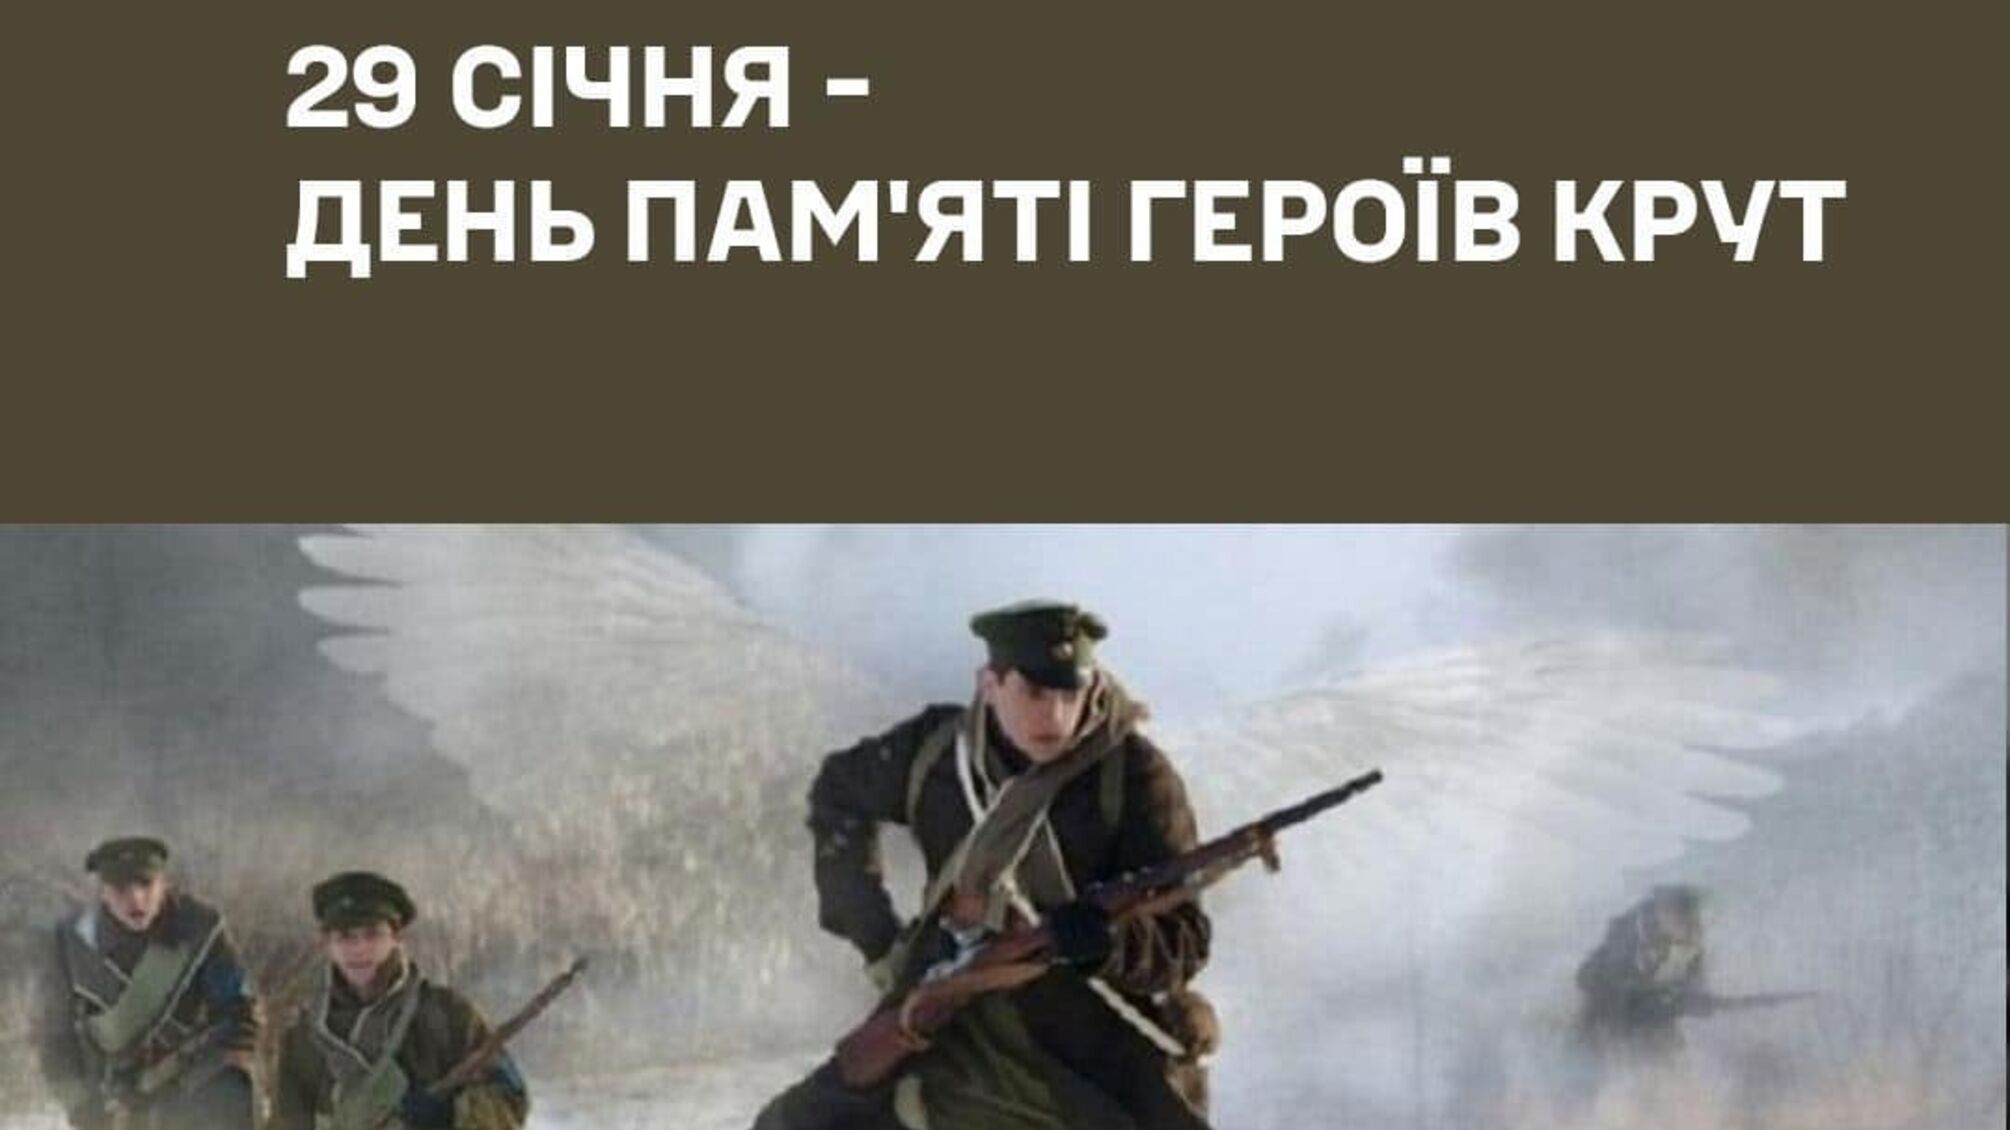 Генерал Наев выразил дань уважения Героям Крут